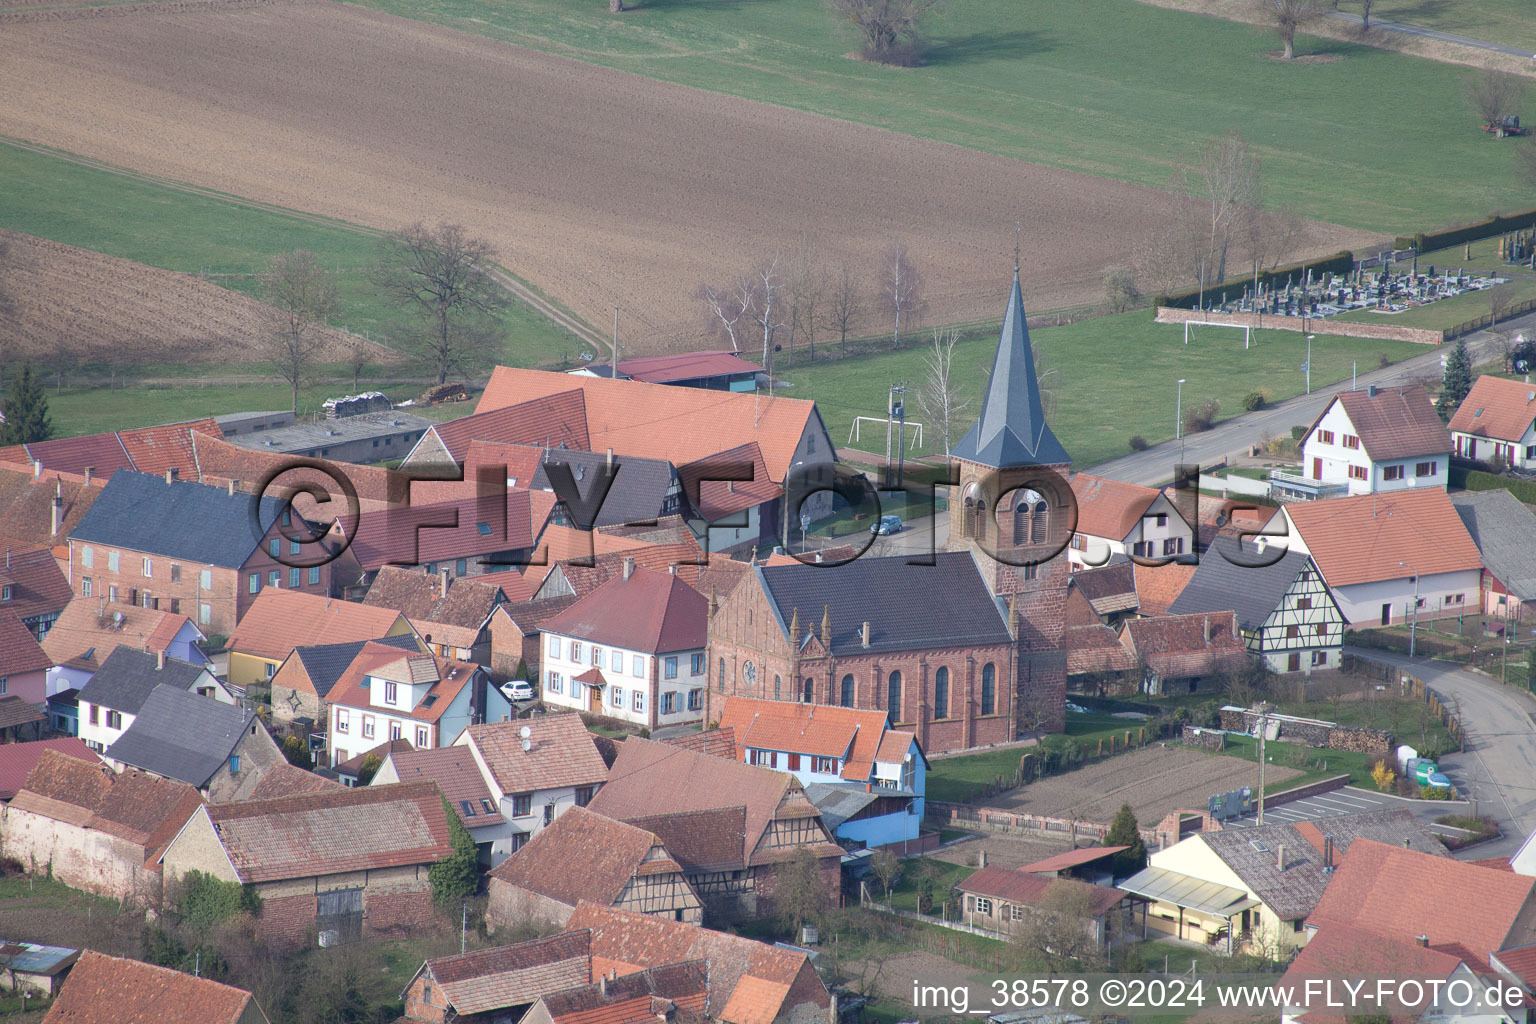 Luftbild von Dorf - Ansicht am Rande von landwirtschaftlichen Feldern und Nutzflächen in Geiswiller in Grand Est im Bundesland Bas-Rhin, Frankreich